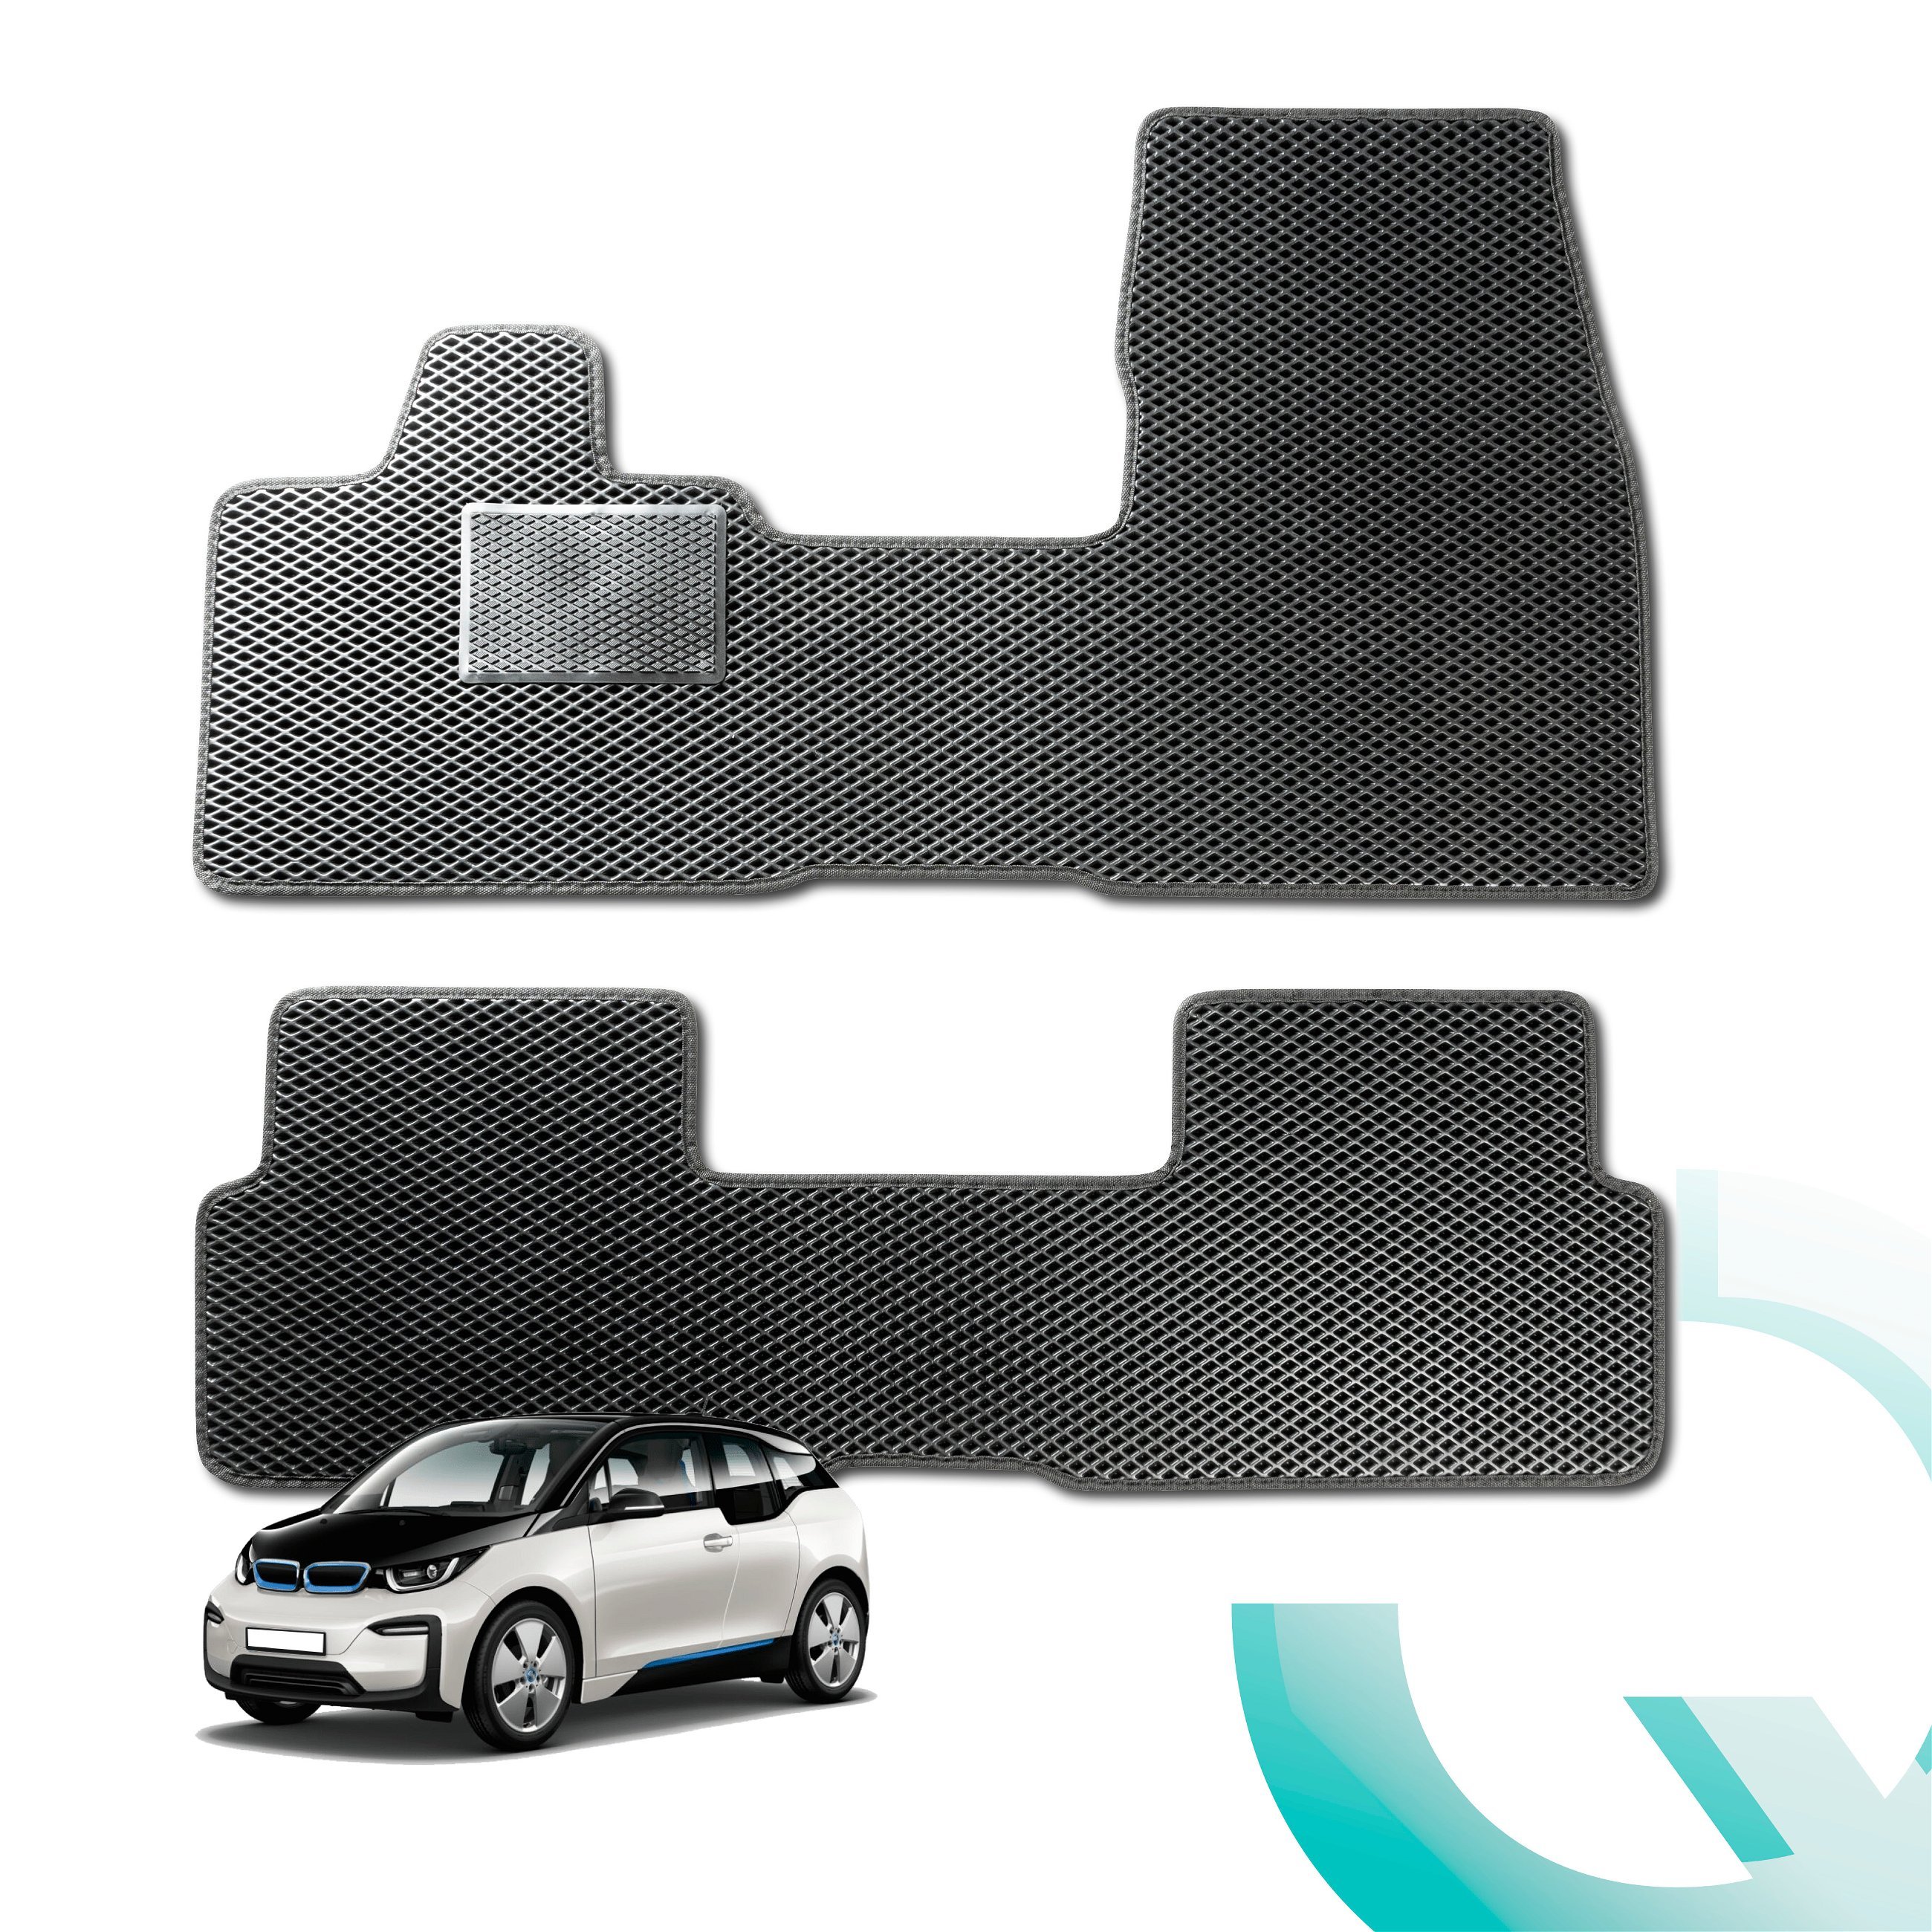 Tapis en caoutchouc Qlean Mats pour BMW X1 (F48) 11/2014- Auj., tapis de sol pour voiture en matériau EVA